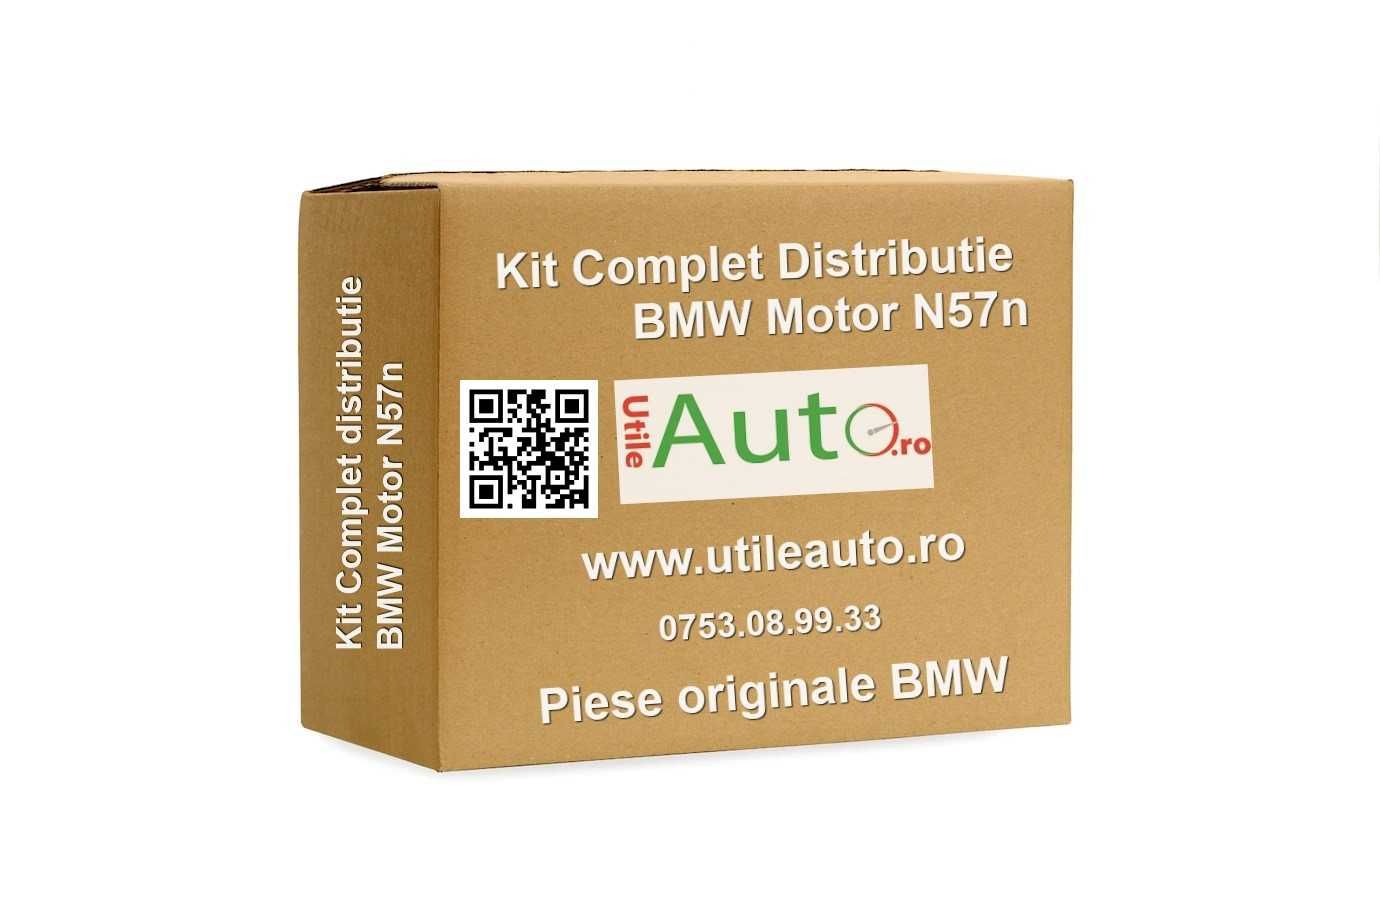 Kit Complet Distributie OE BMW Motor N57n